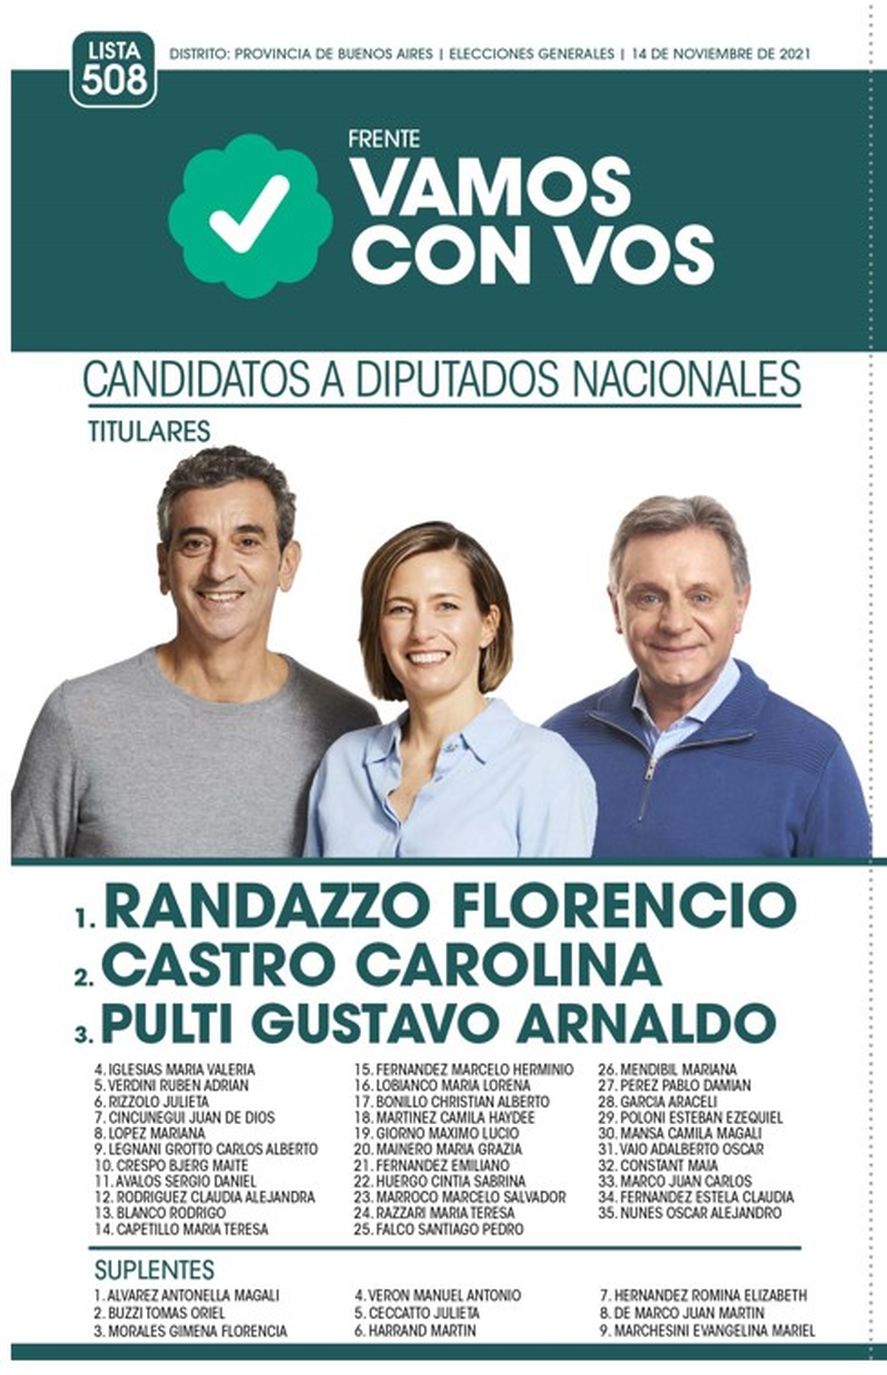 La lista de candidatos a diputados nacionales de Vamos con Vos, por la provincia de Buenos Aires, para las elecciones legislativas 2021